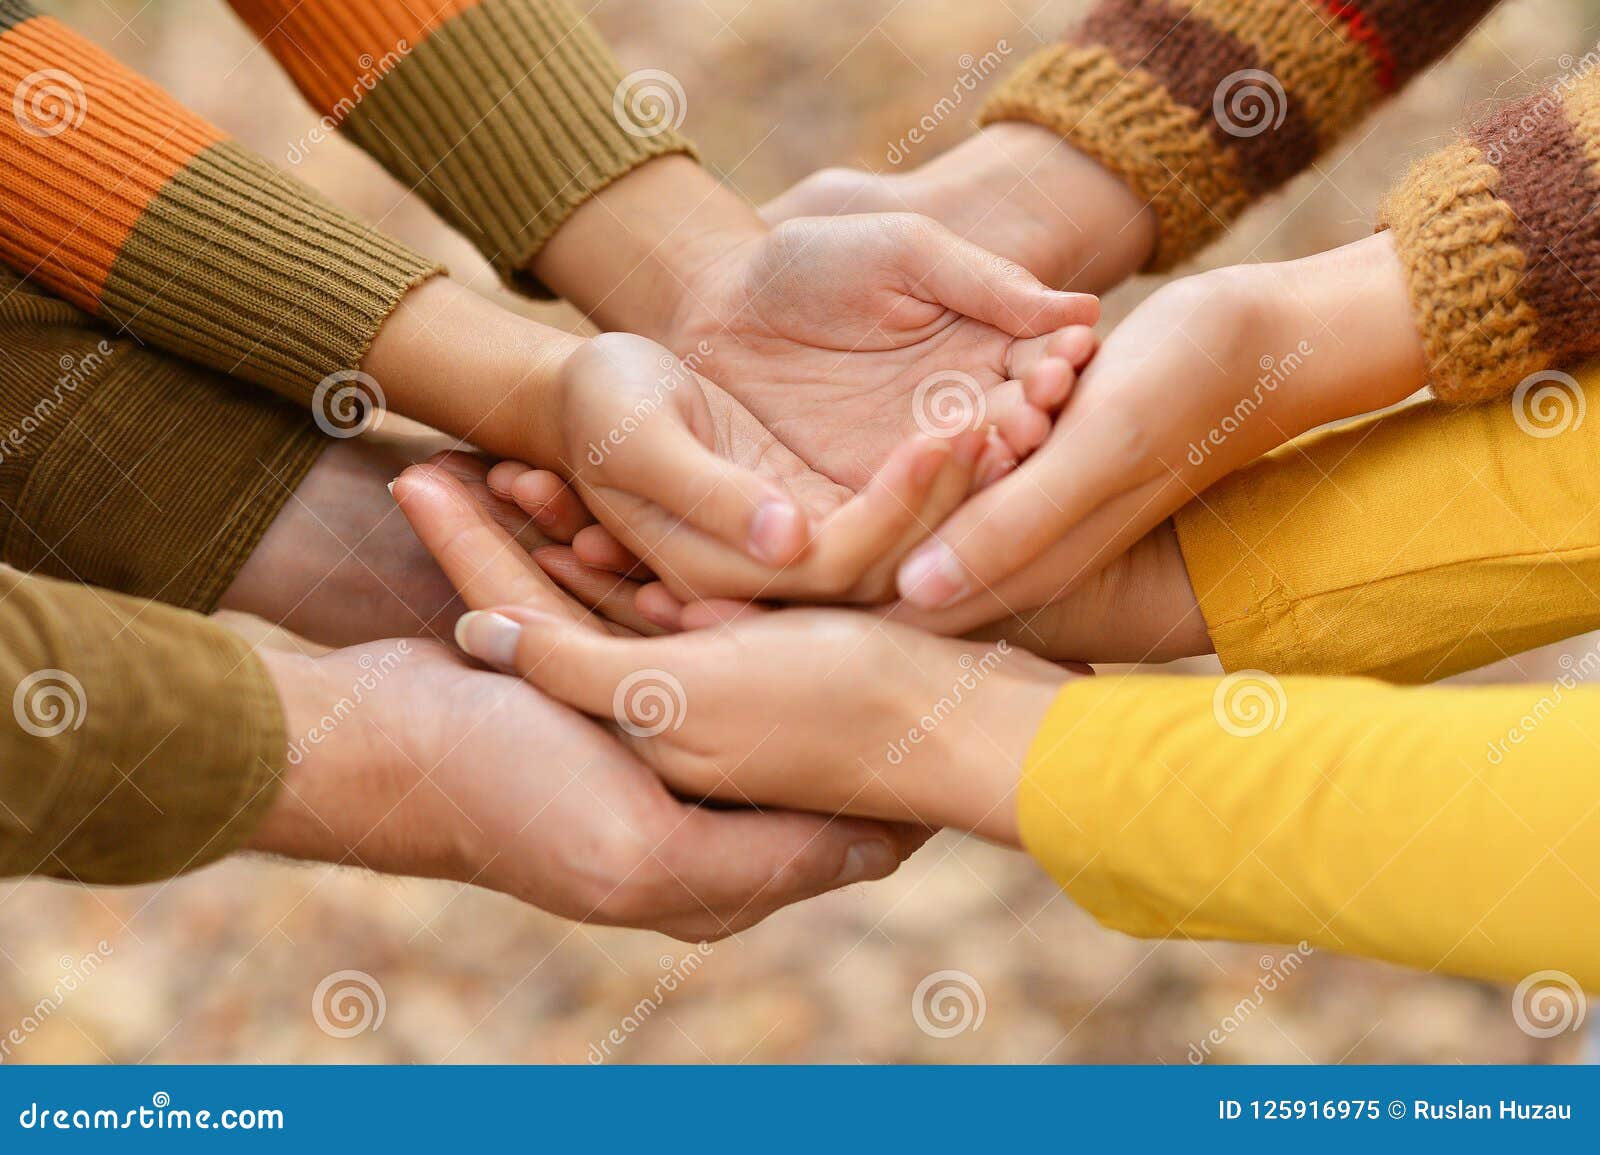 Handed family. Семья руки вместе. Руки в руках семья. Ладони семьи. Четыре руки вместе семья.